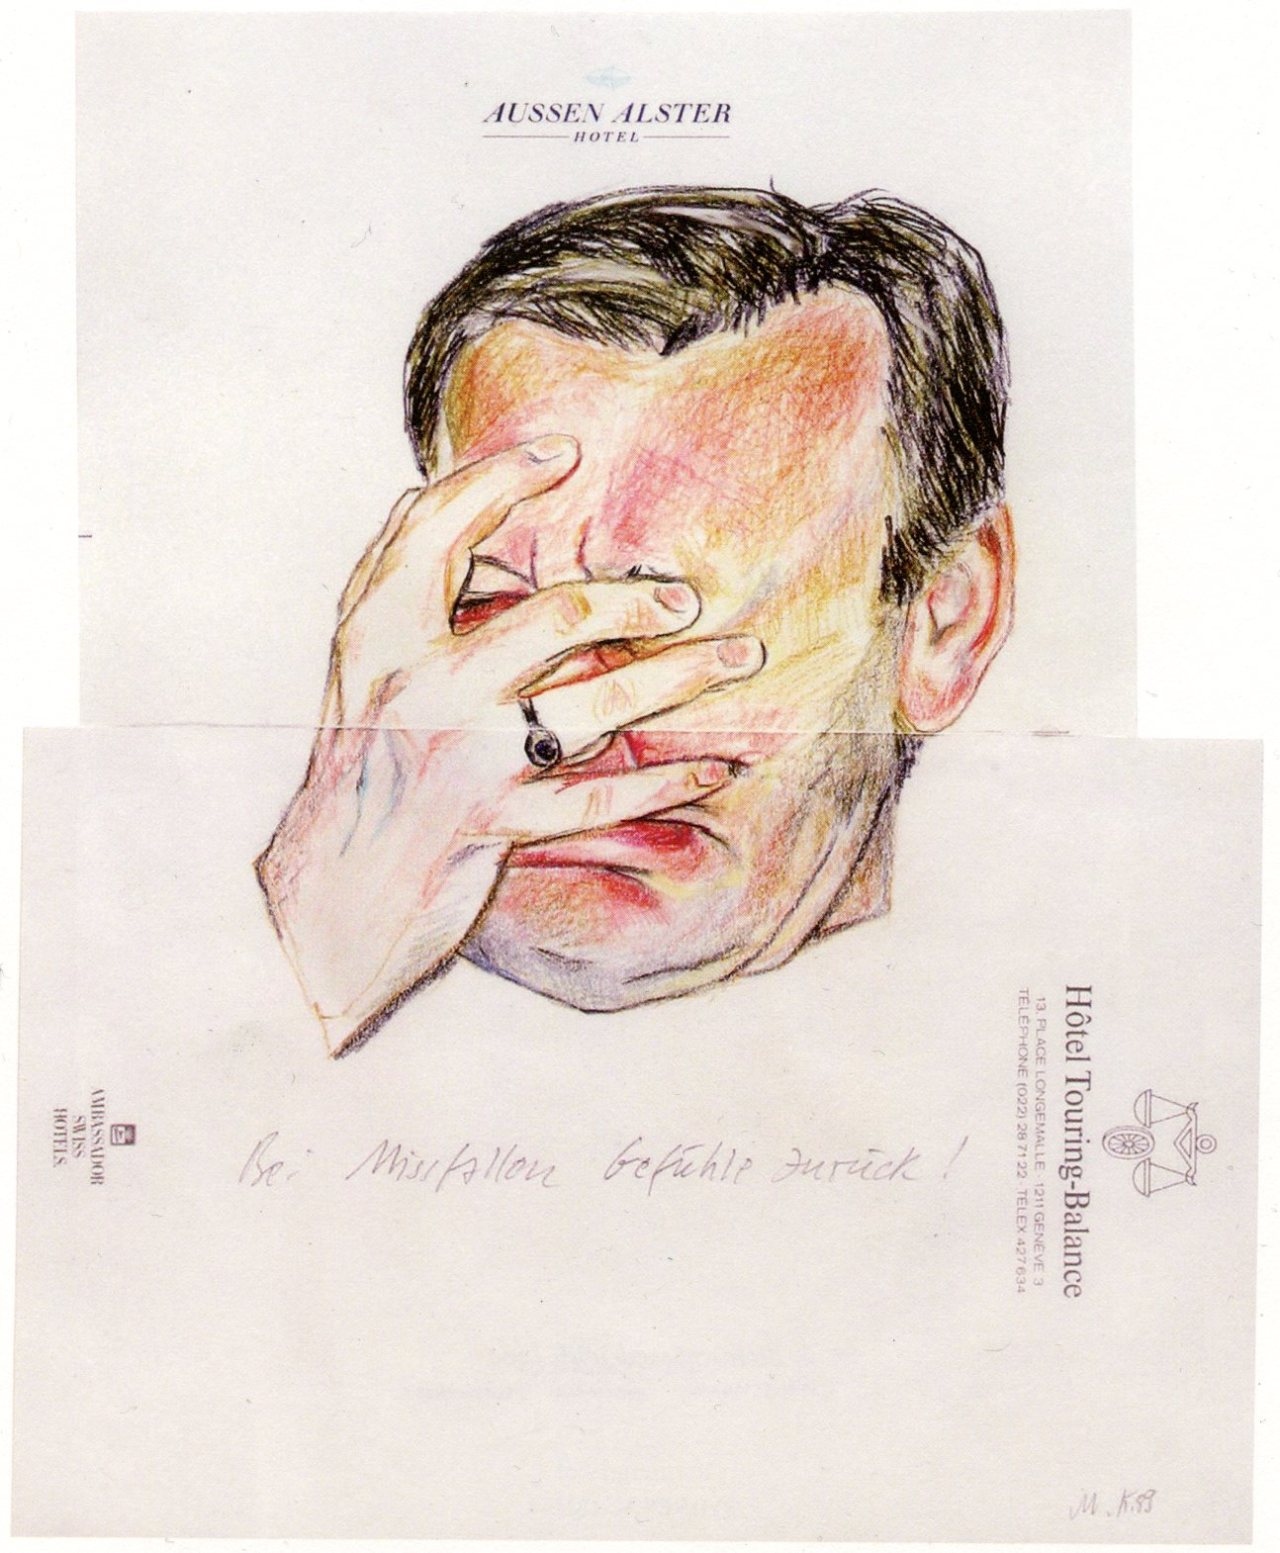 Martin Kippenberger, Bei Mißfallen Gefühle zurück, 1989